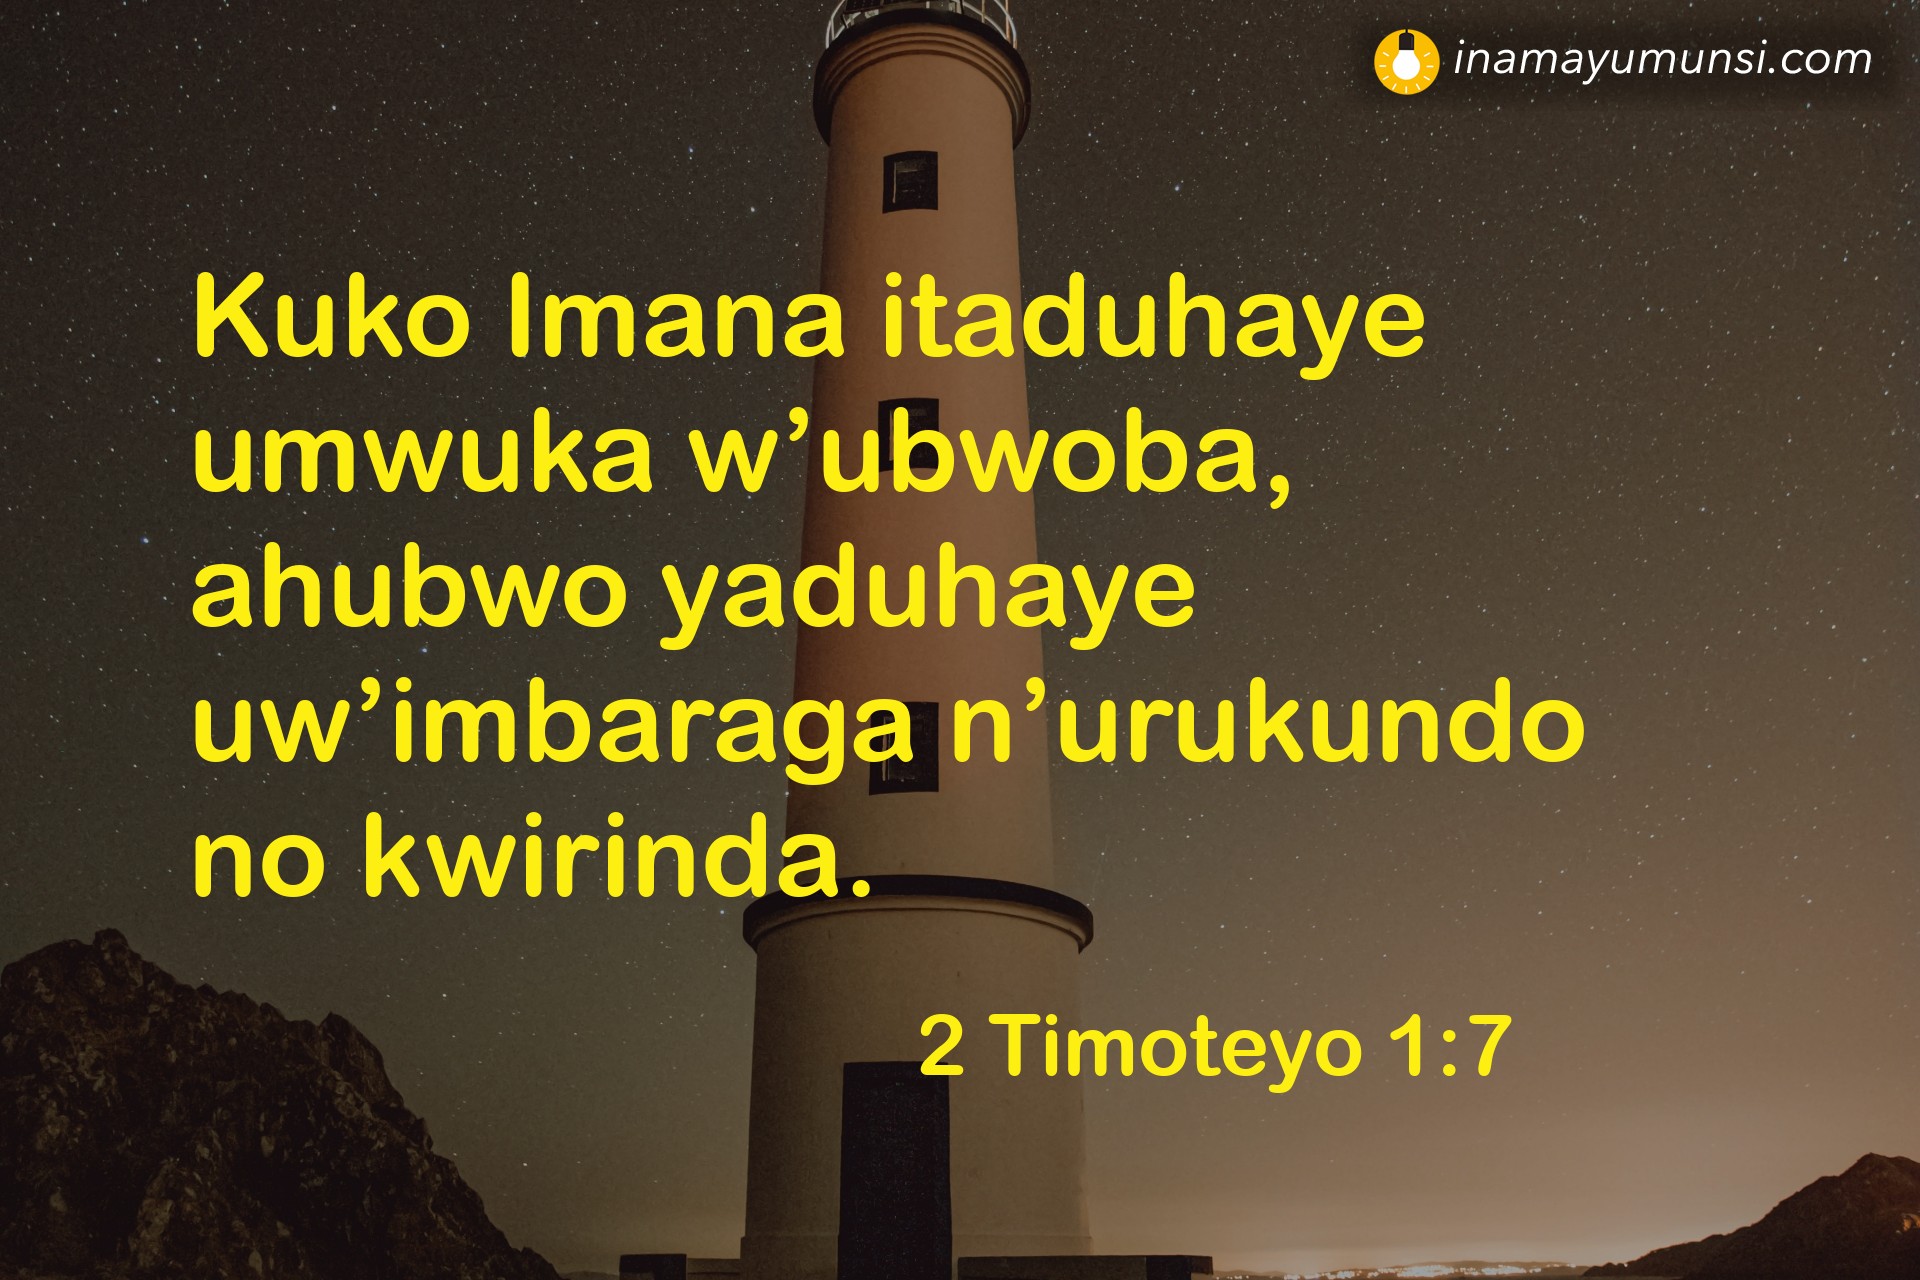 2 Timoteyo 1:7 ⇒ Kuko Imana itaduhaye umwuka w’ubwoba, ahubwo yaduhaye uw’imbaraga ..